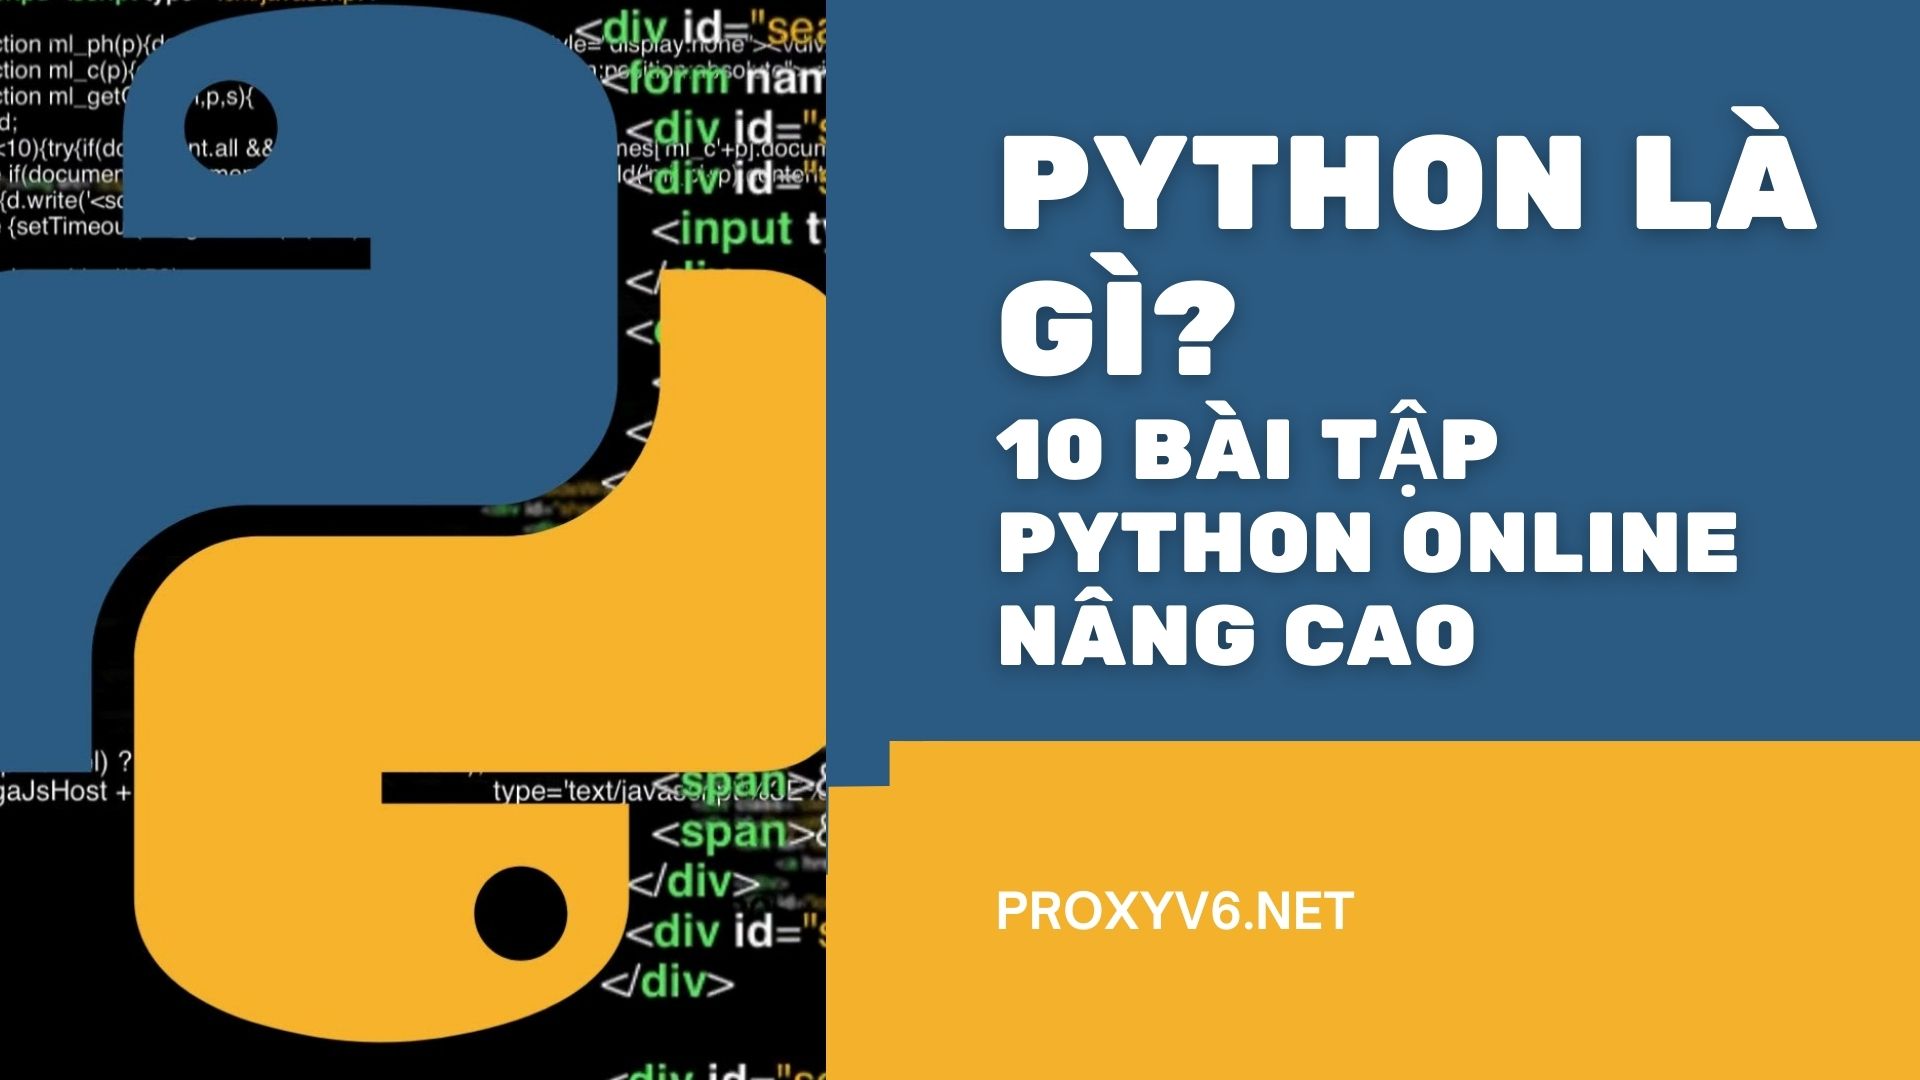 Python là gì? 10 bài tập Python online nâng cao